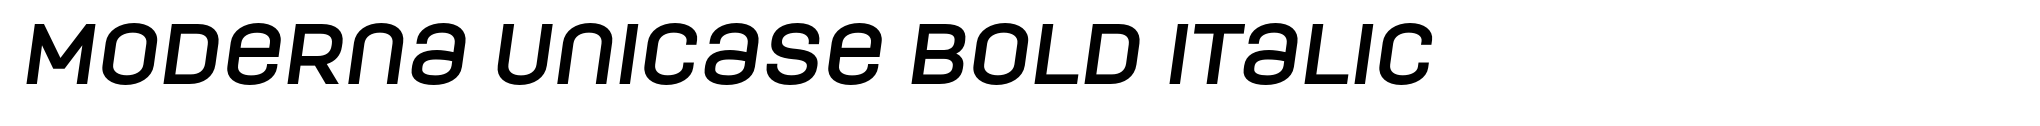 Moderna Unicase Bold Italic image